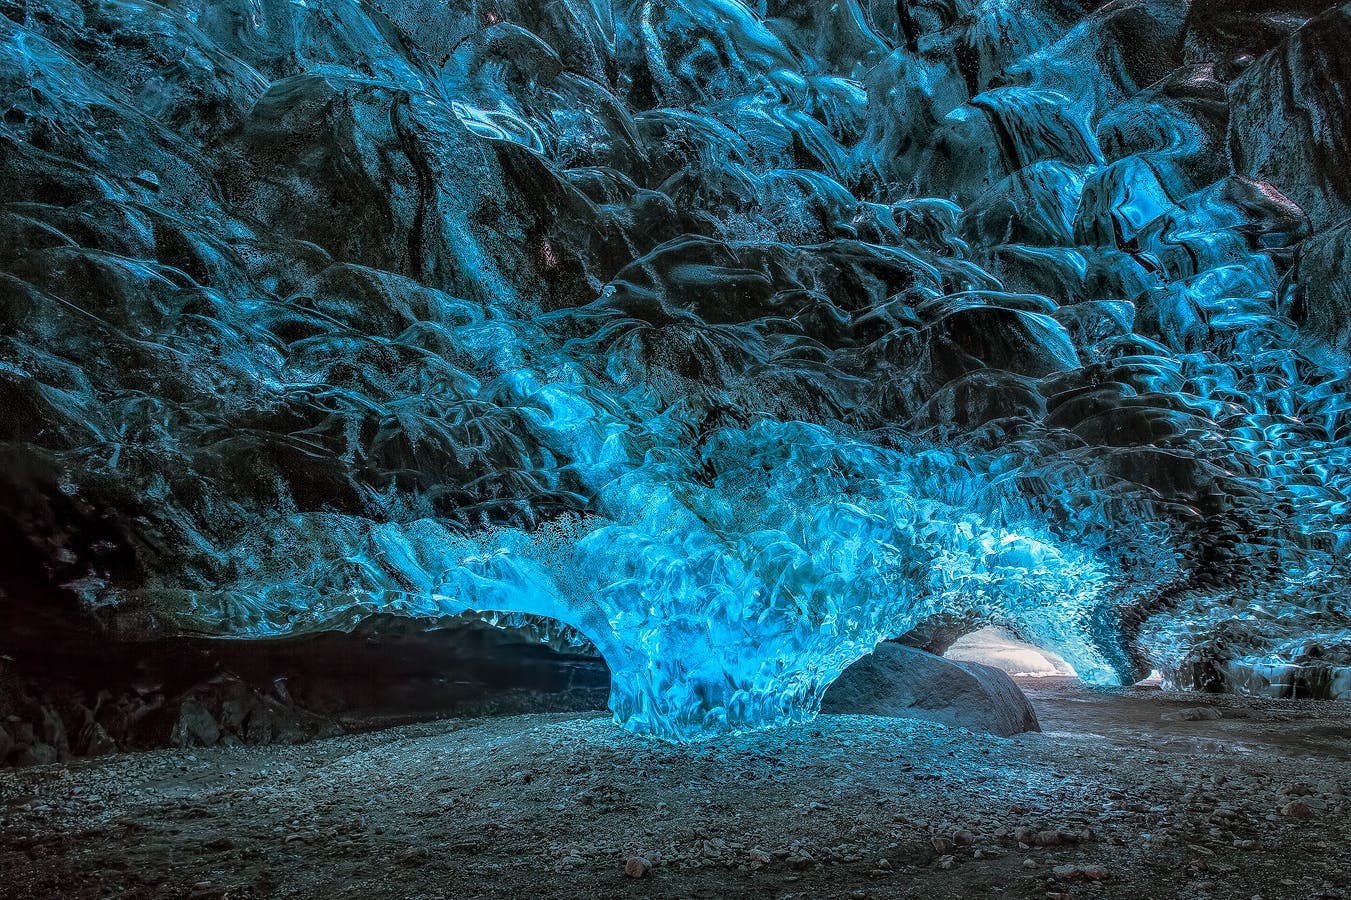 Les grottes de glace de glacier sur la côte sud de l'Islande comptent parmi les plus belles caractéristiques naturelles du pays.